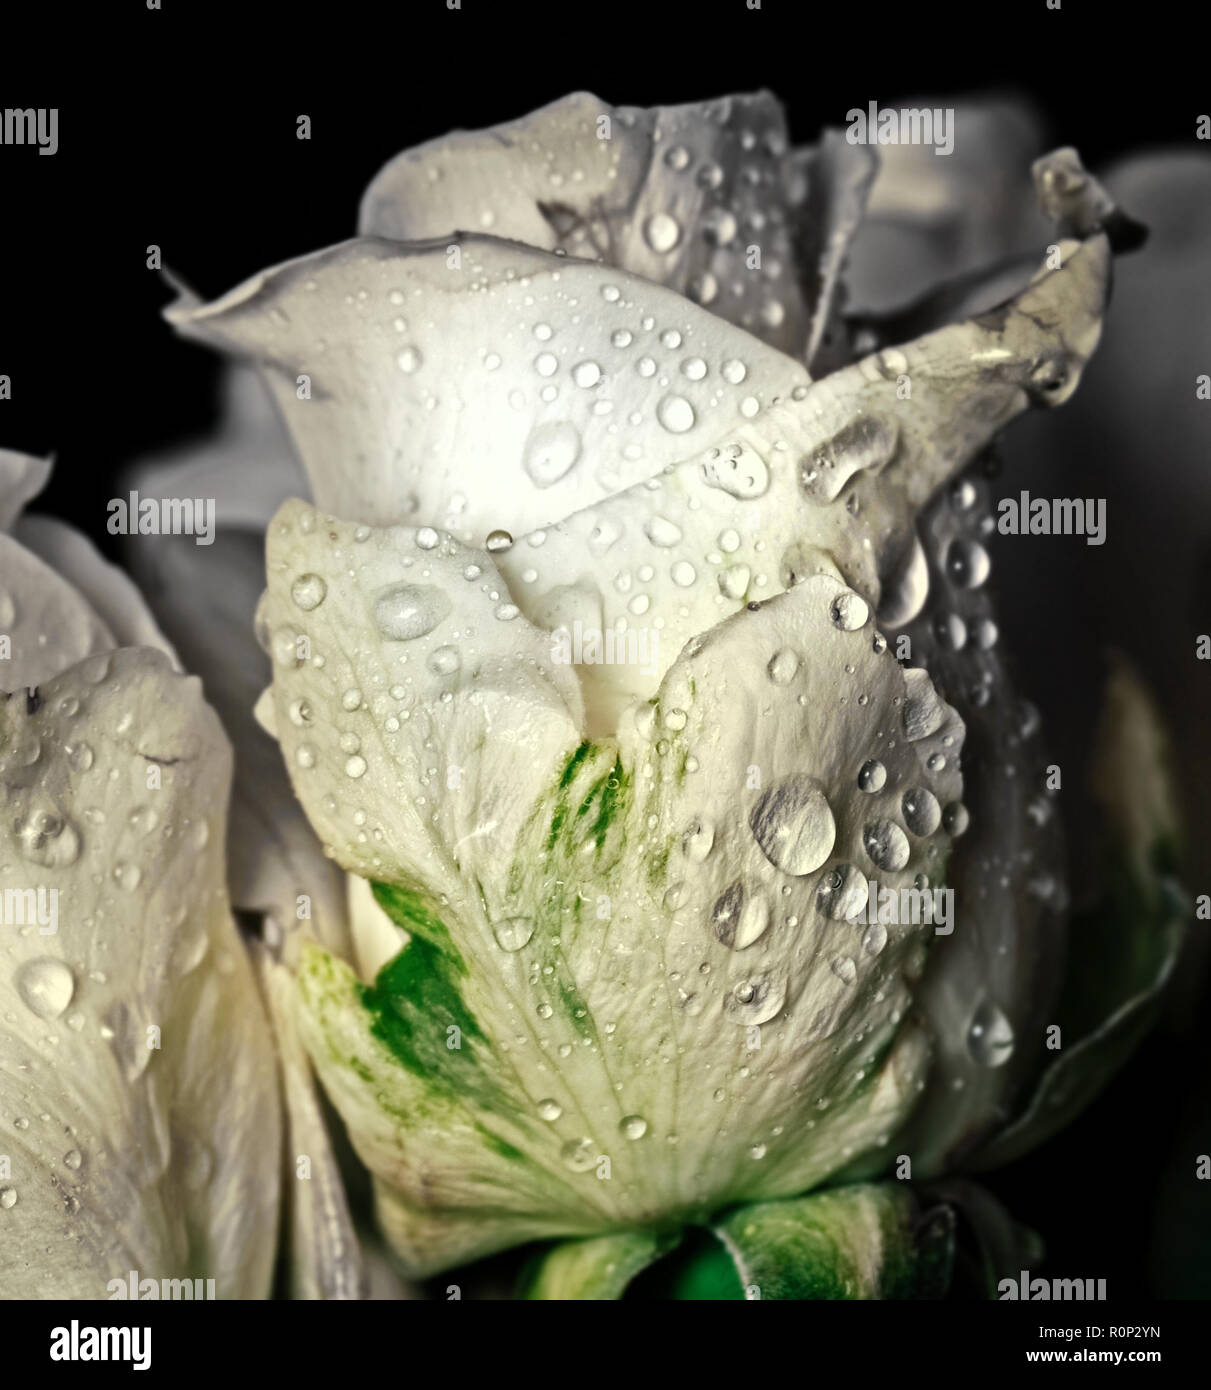 Ziemlich frische weiße Rose in Wassertropfen auf einem dunklen Hintergrund Stockfoto